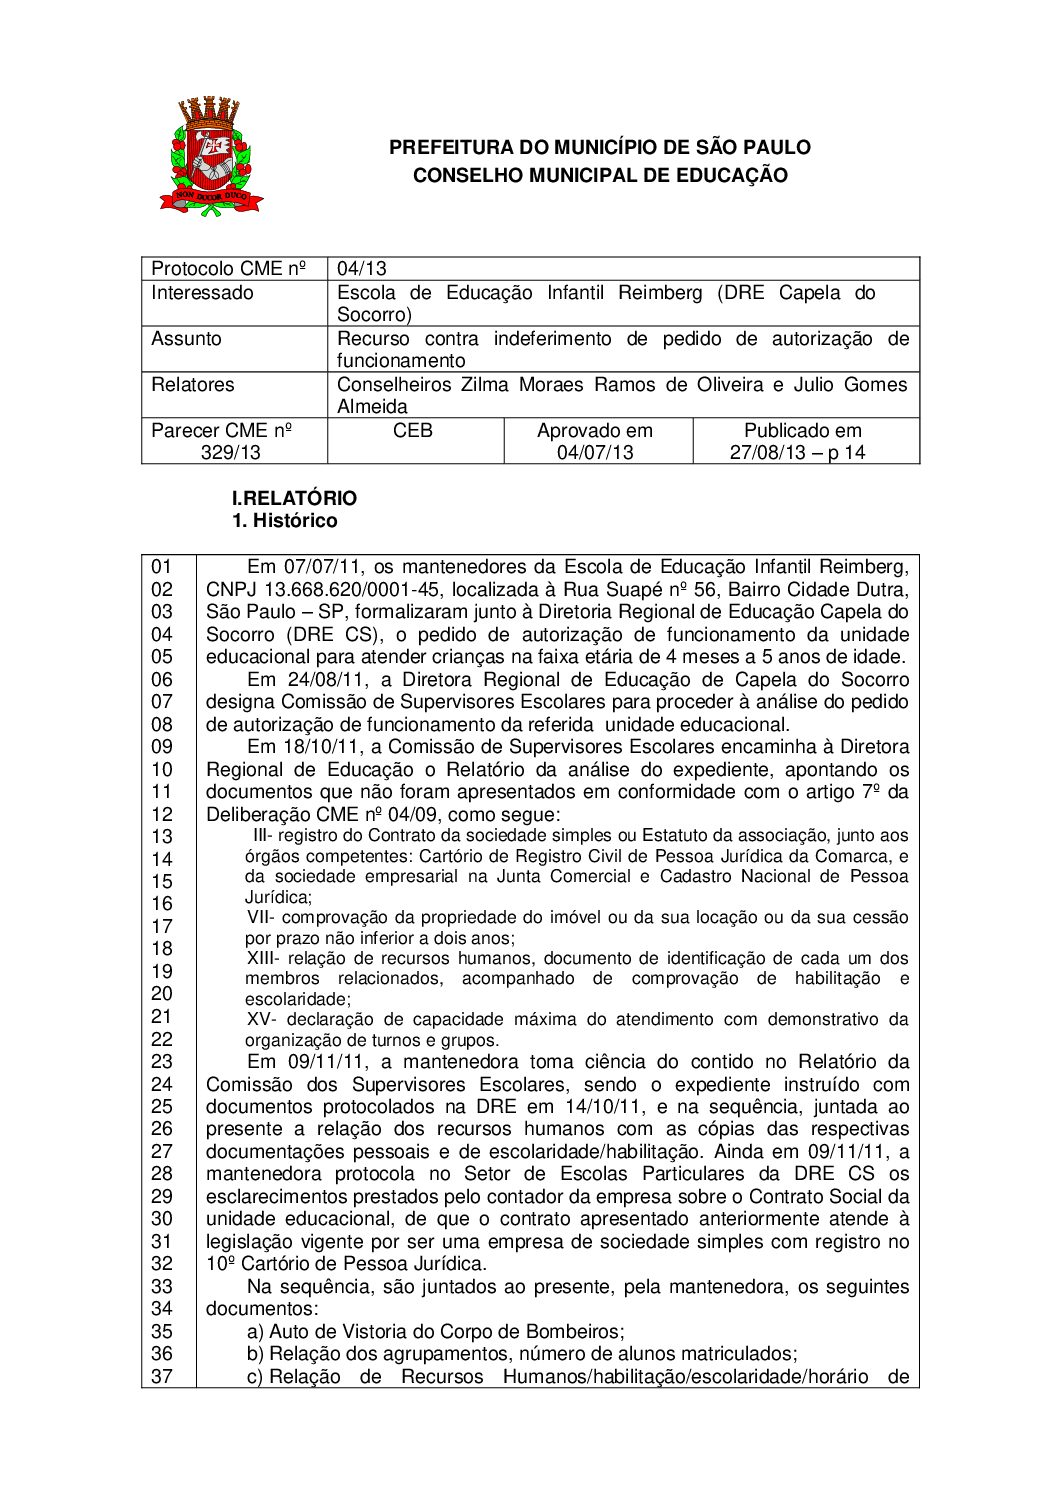 Parecer CME nº 329/2013 - Escola de Educação Infantil Reimberg (DRE Capela do Socorro) - Recurso contra indeferimento de pedido de autorização de funcionamento 